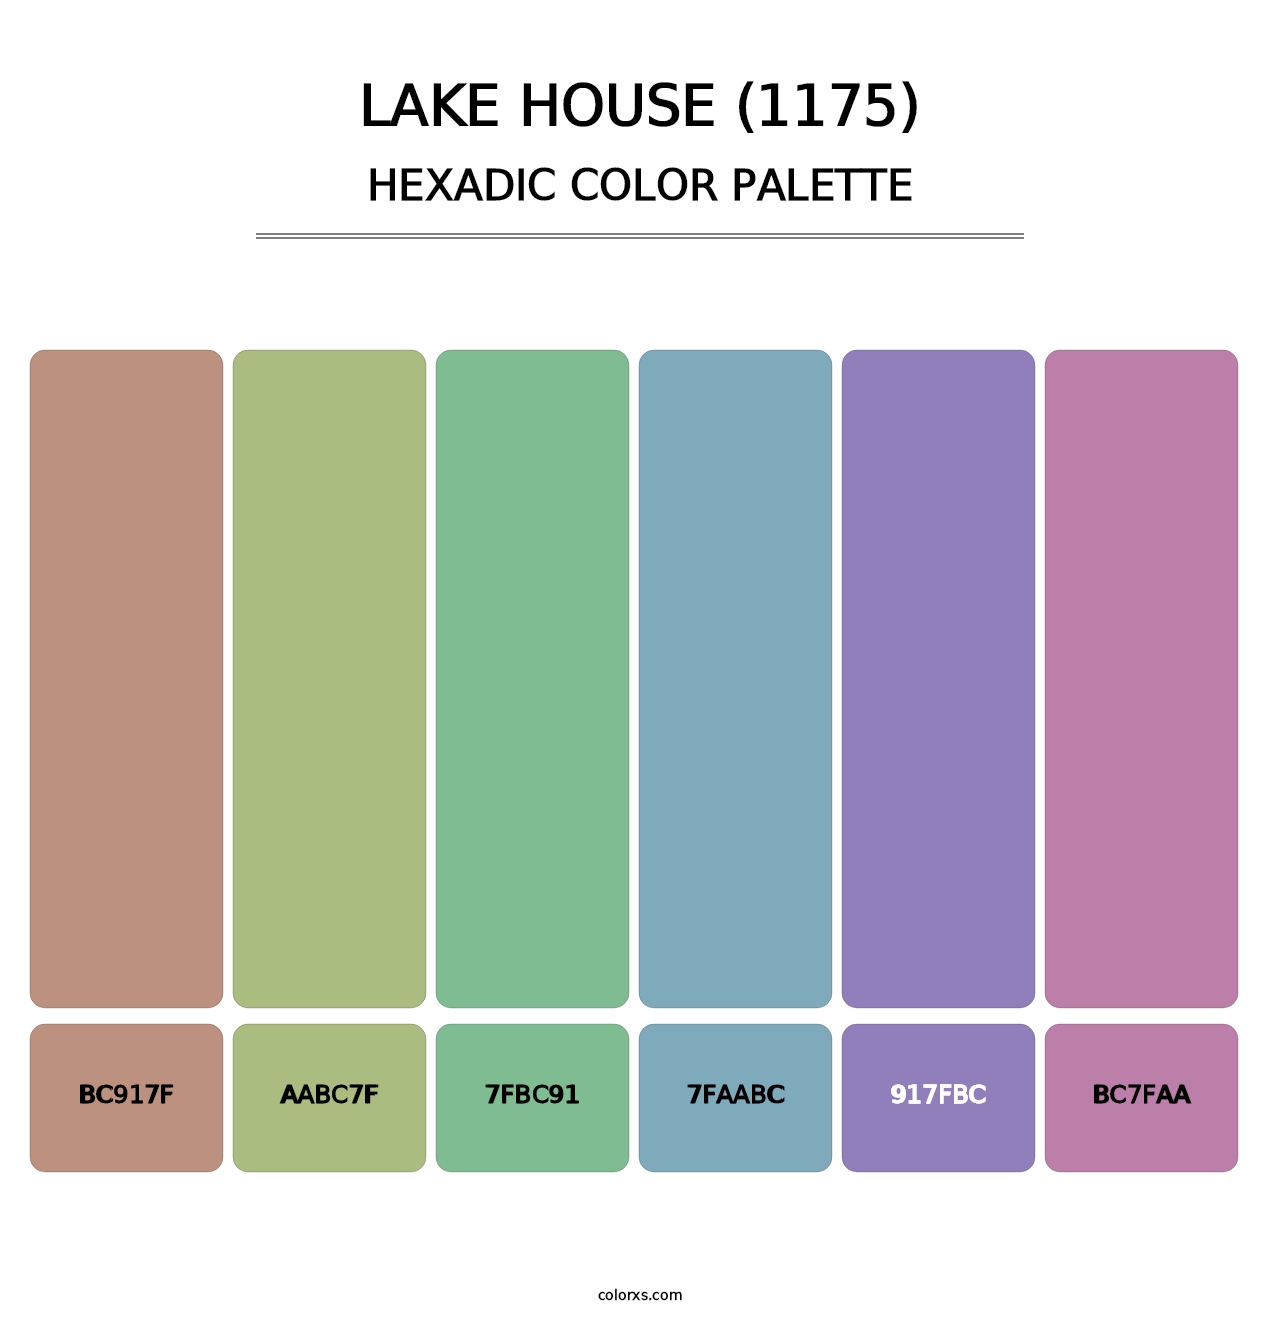 Lake House (1175) - Hexadic Color Palette